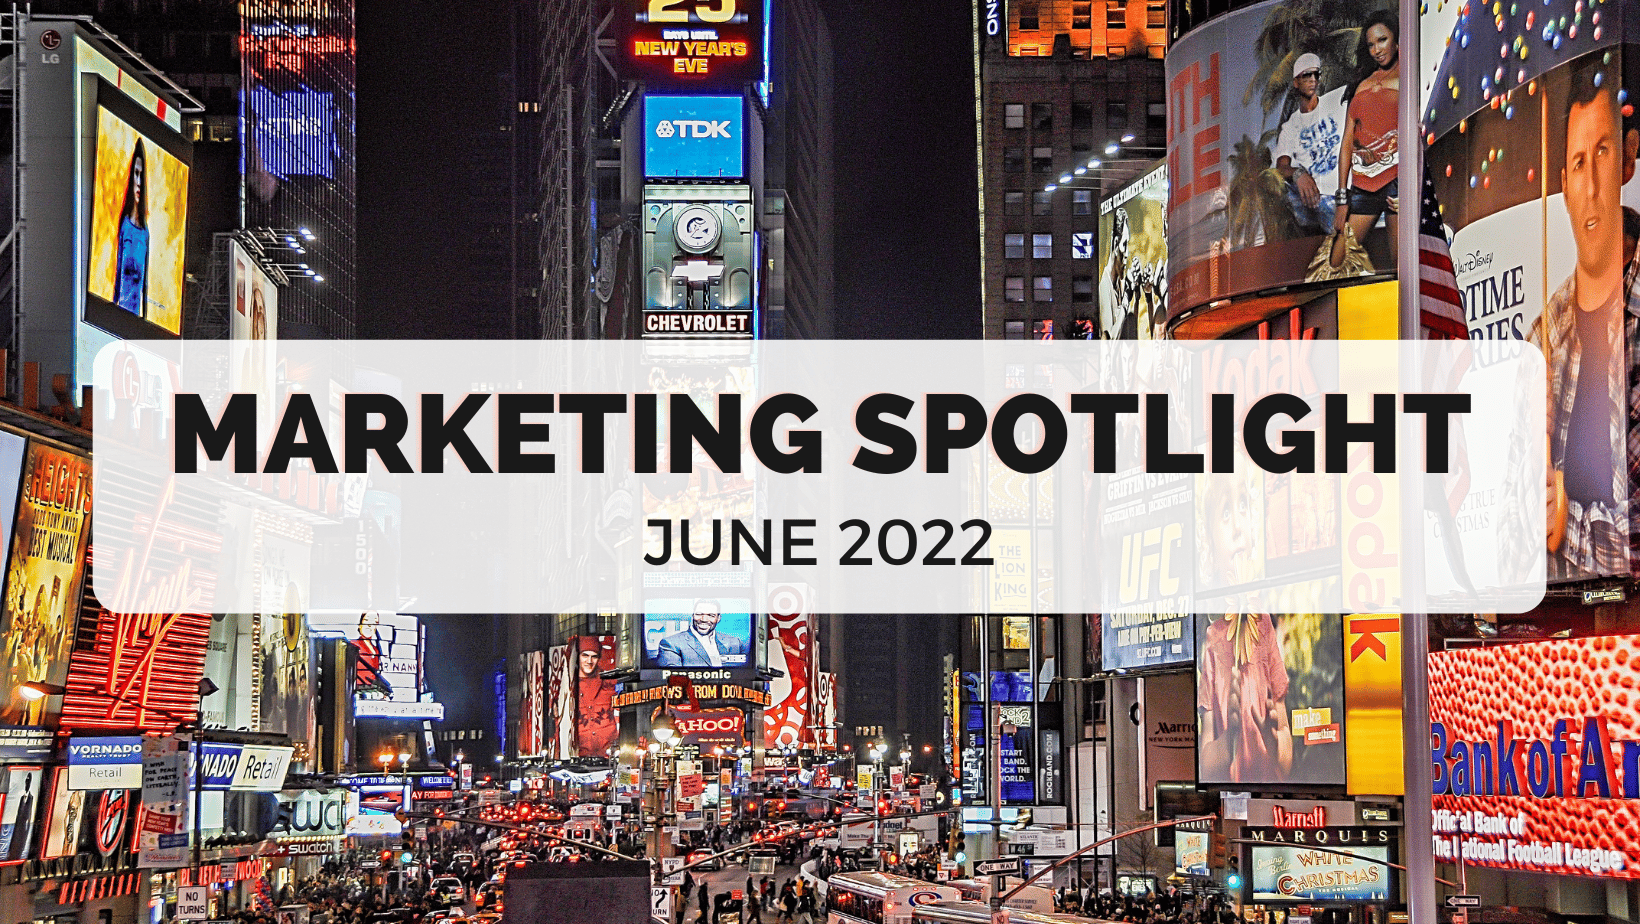 Marketing Spotlight June 2022